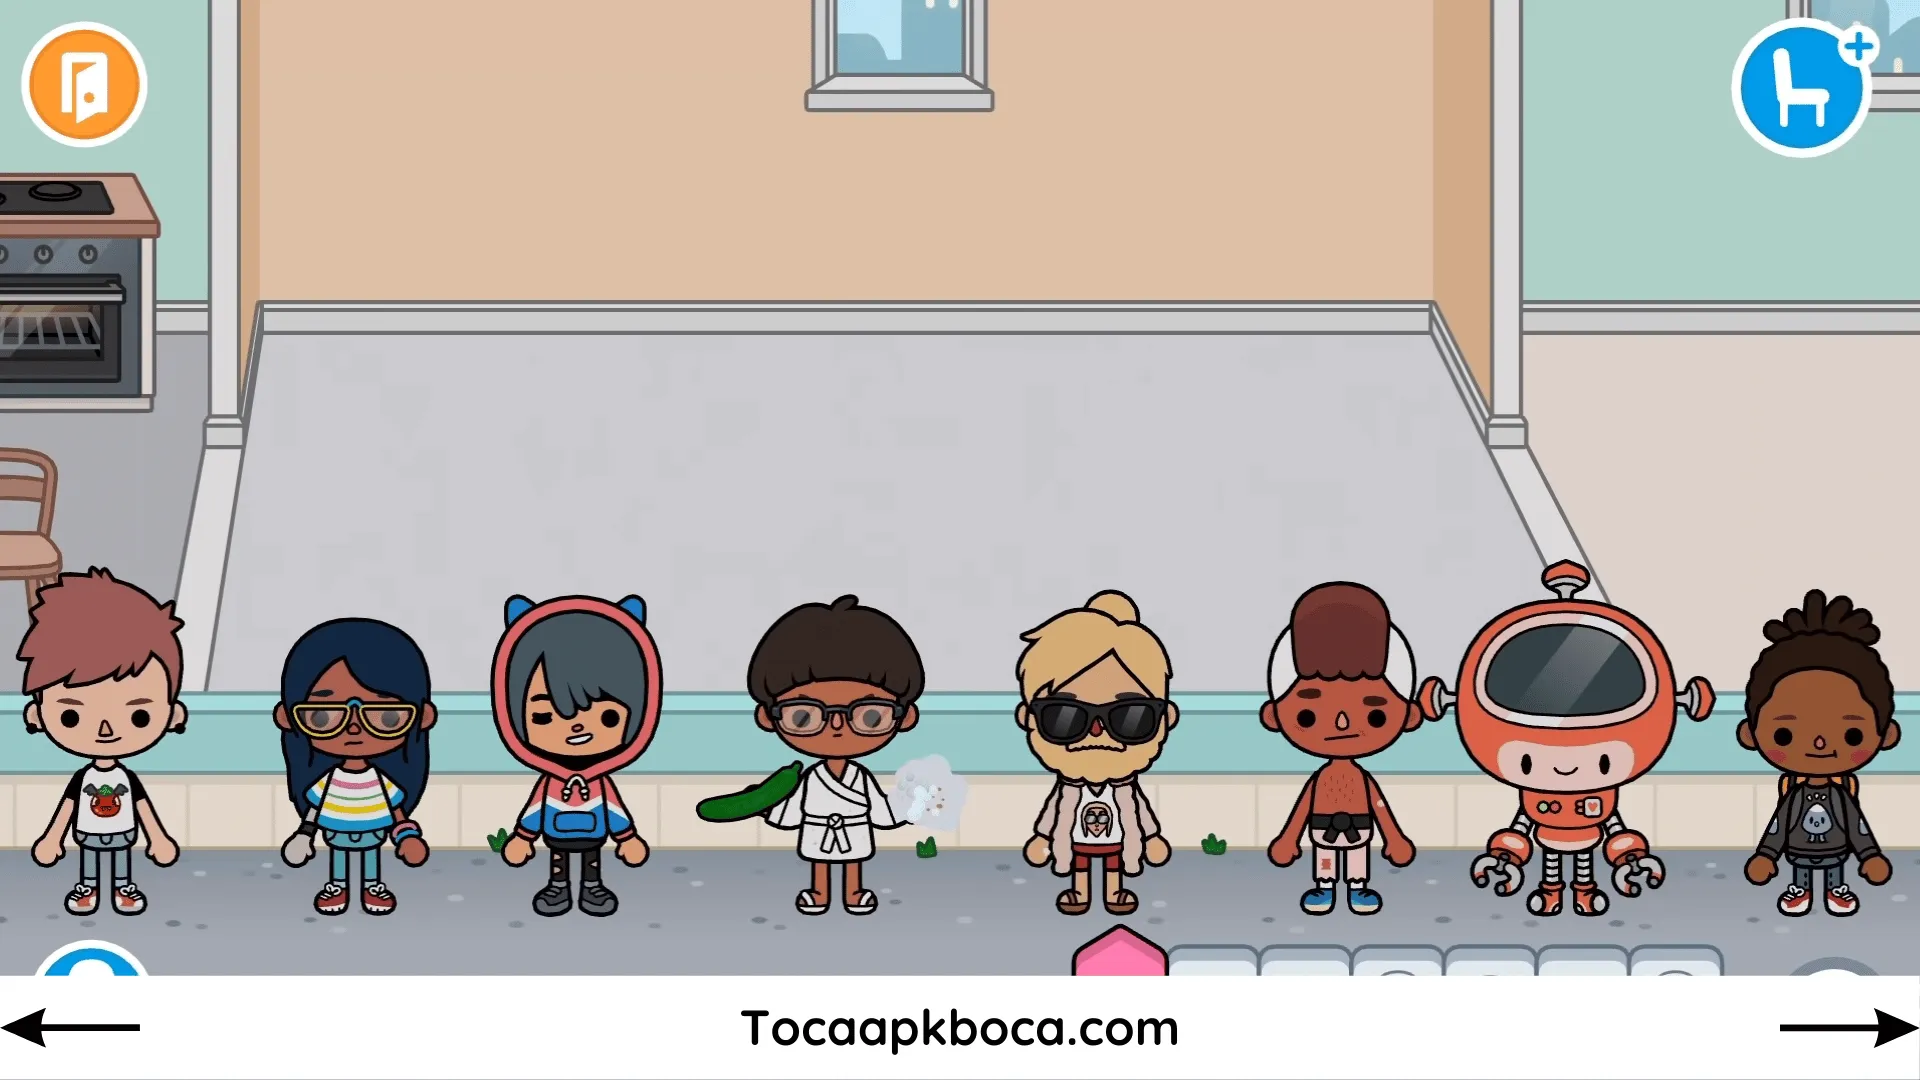 Toca Boca character Gang